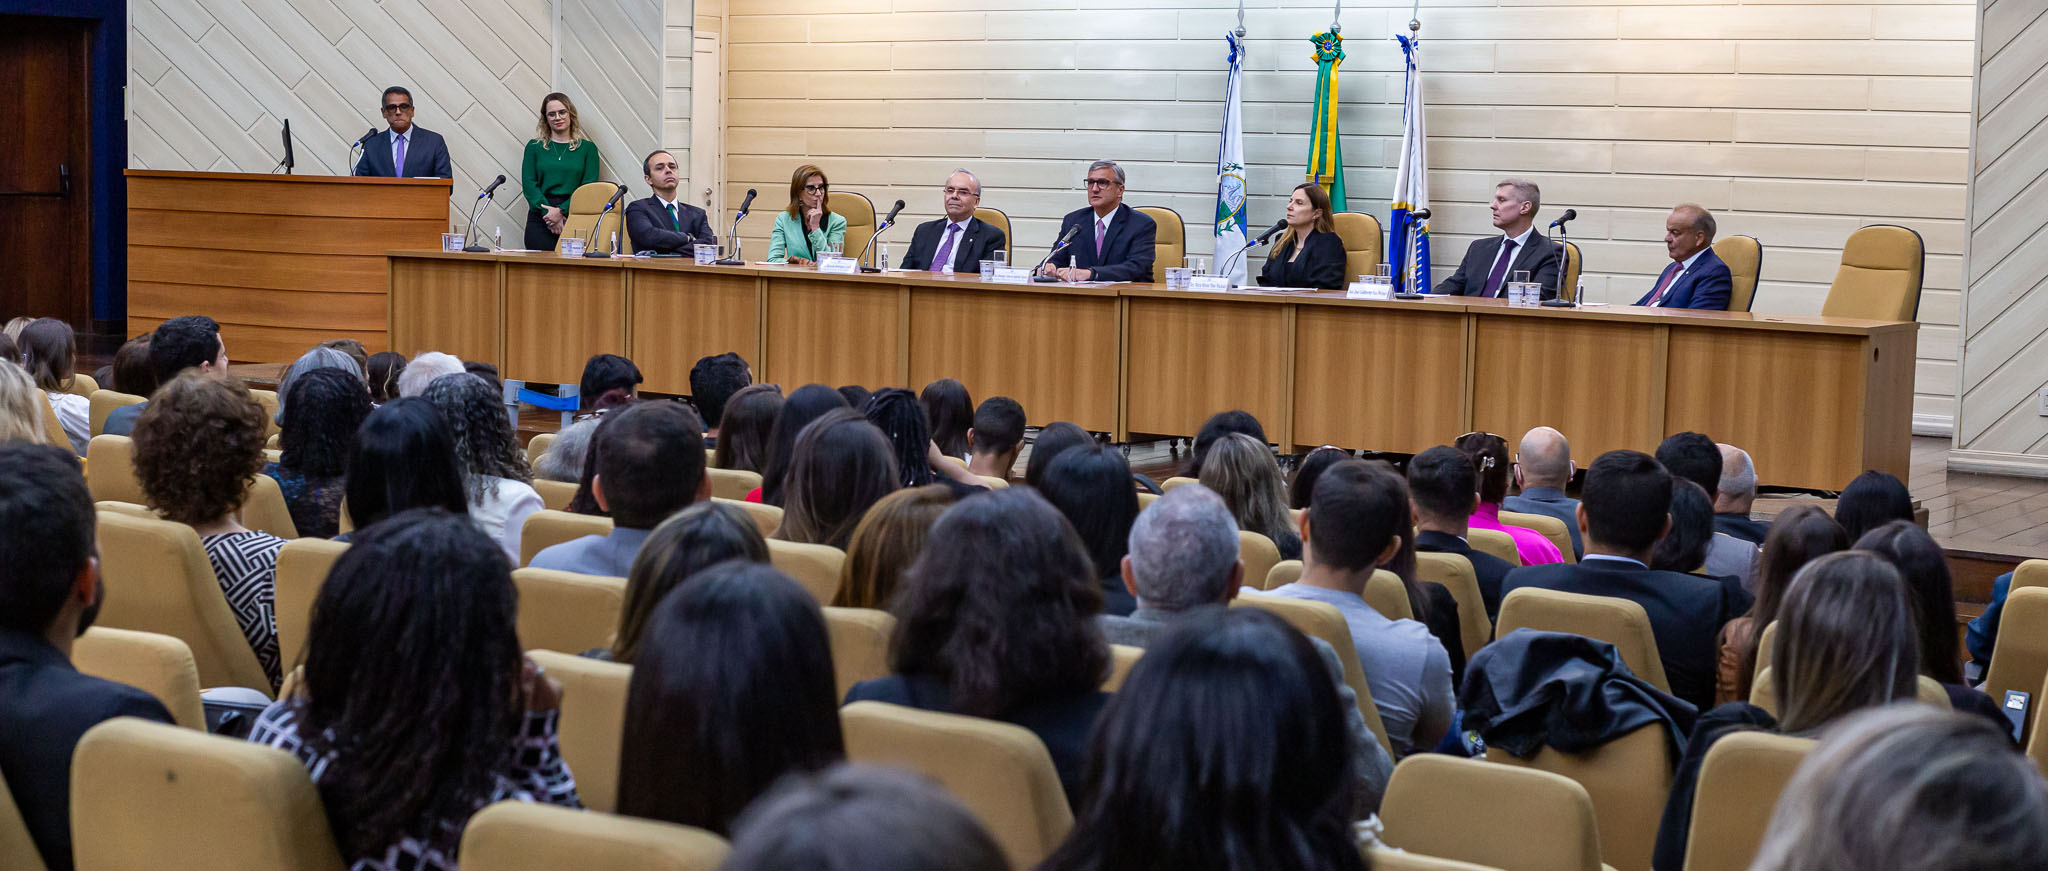 O presidente do TJRJ, desembargador Henrique Figueira, recebe os novos juízes leigos em cerimônia realizada no Auditório Antonio Carlos Amorim.  